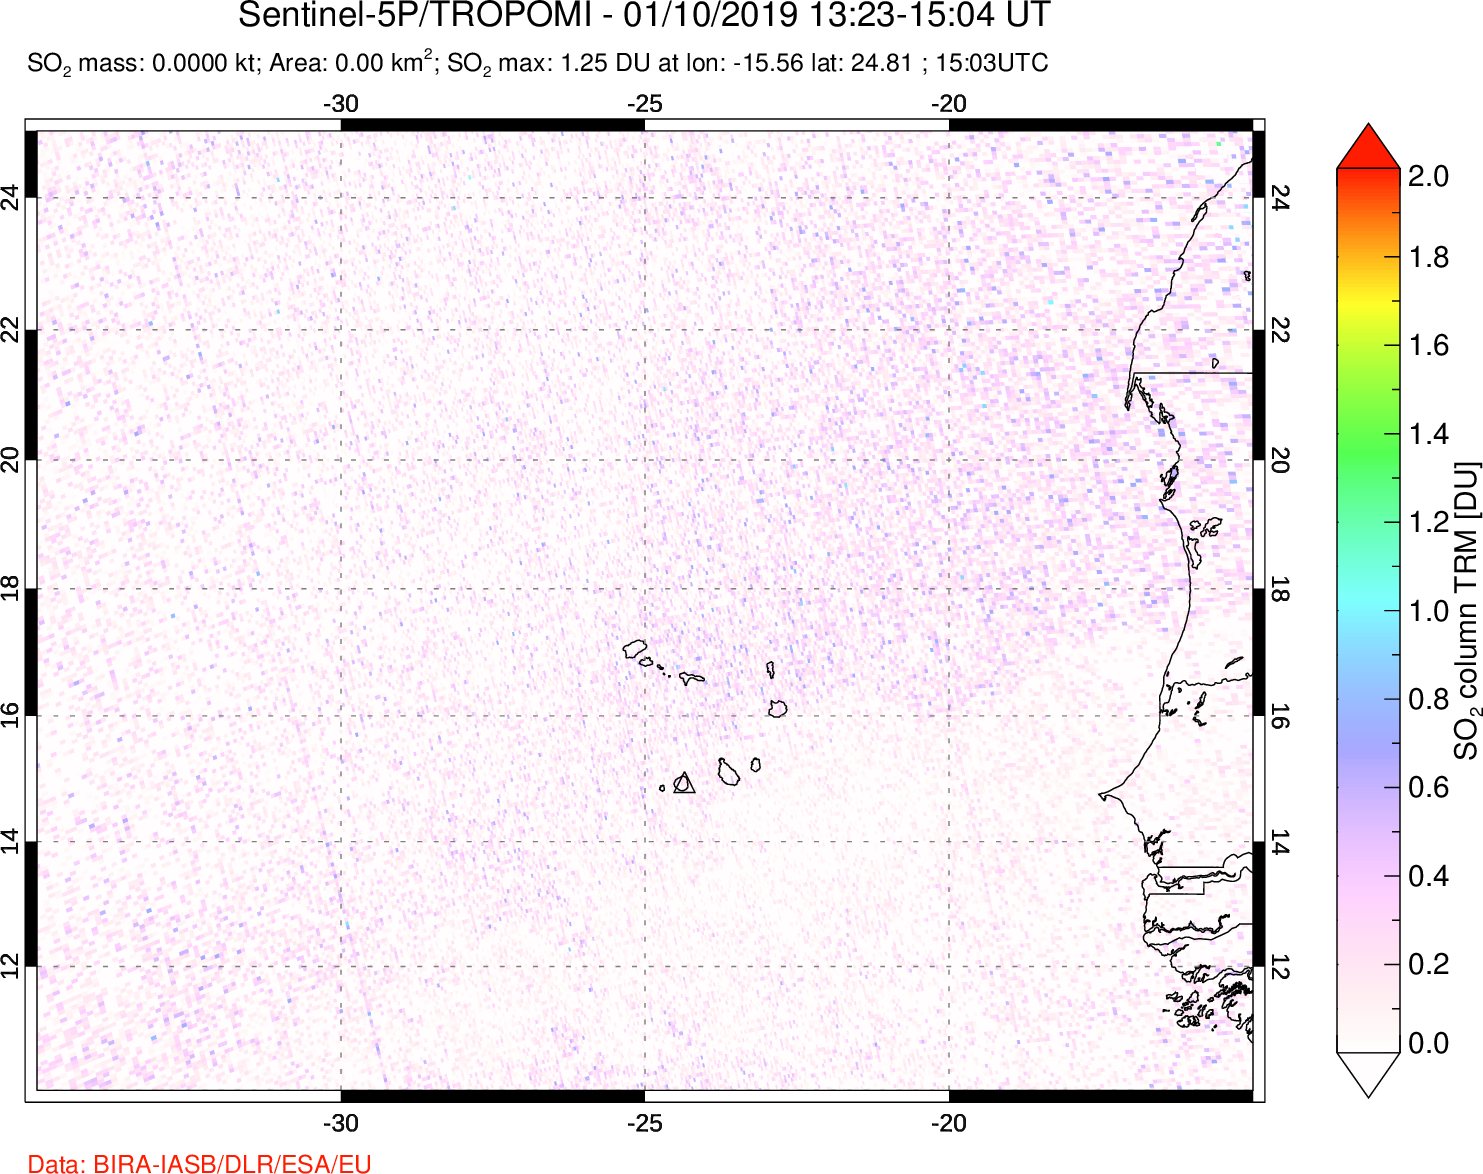 A sulfur dioxide image over Cape Verde Islands on Jan 10, 2019.